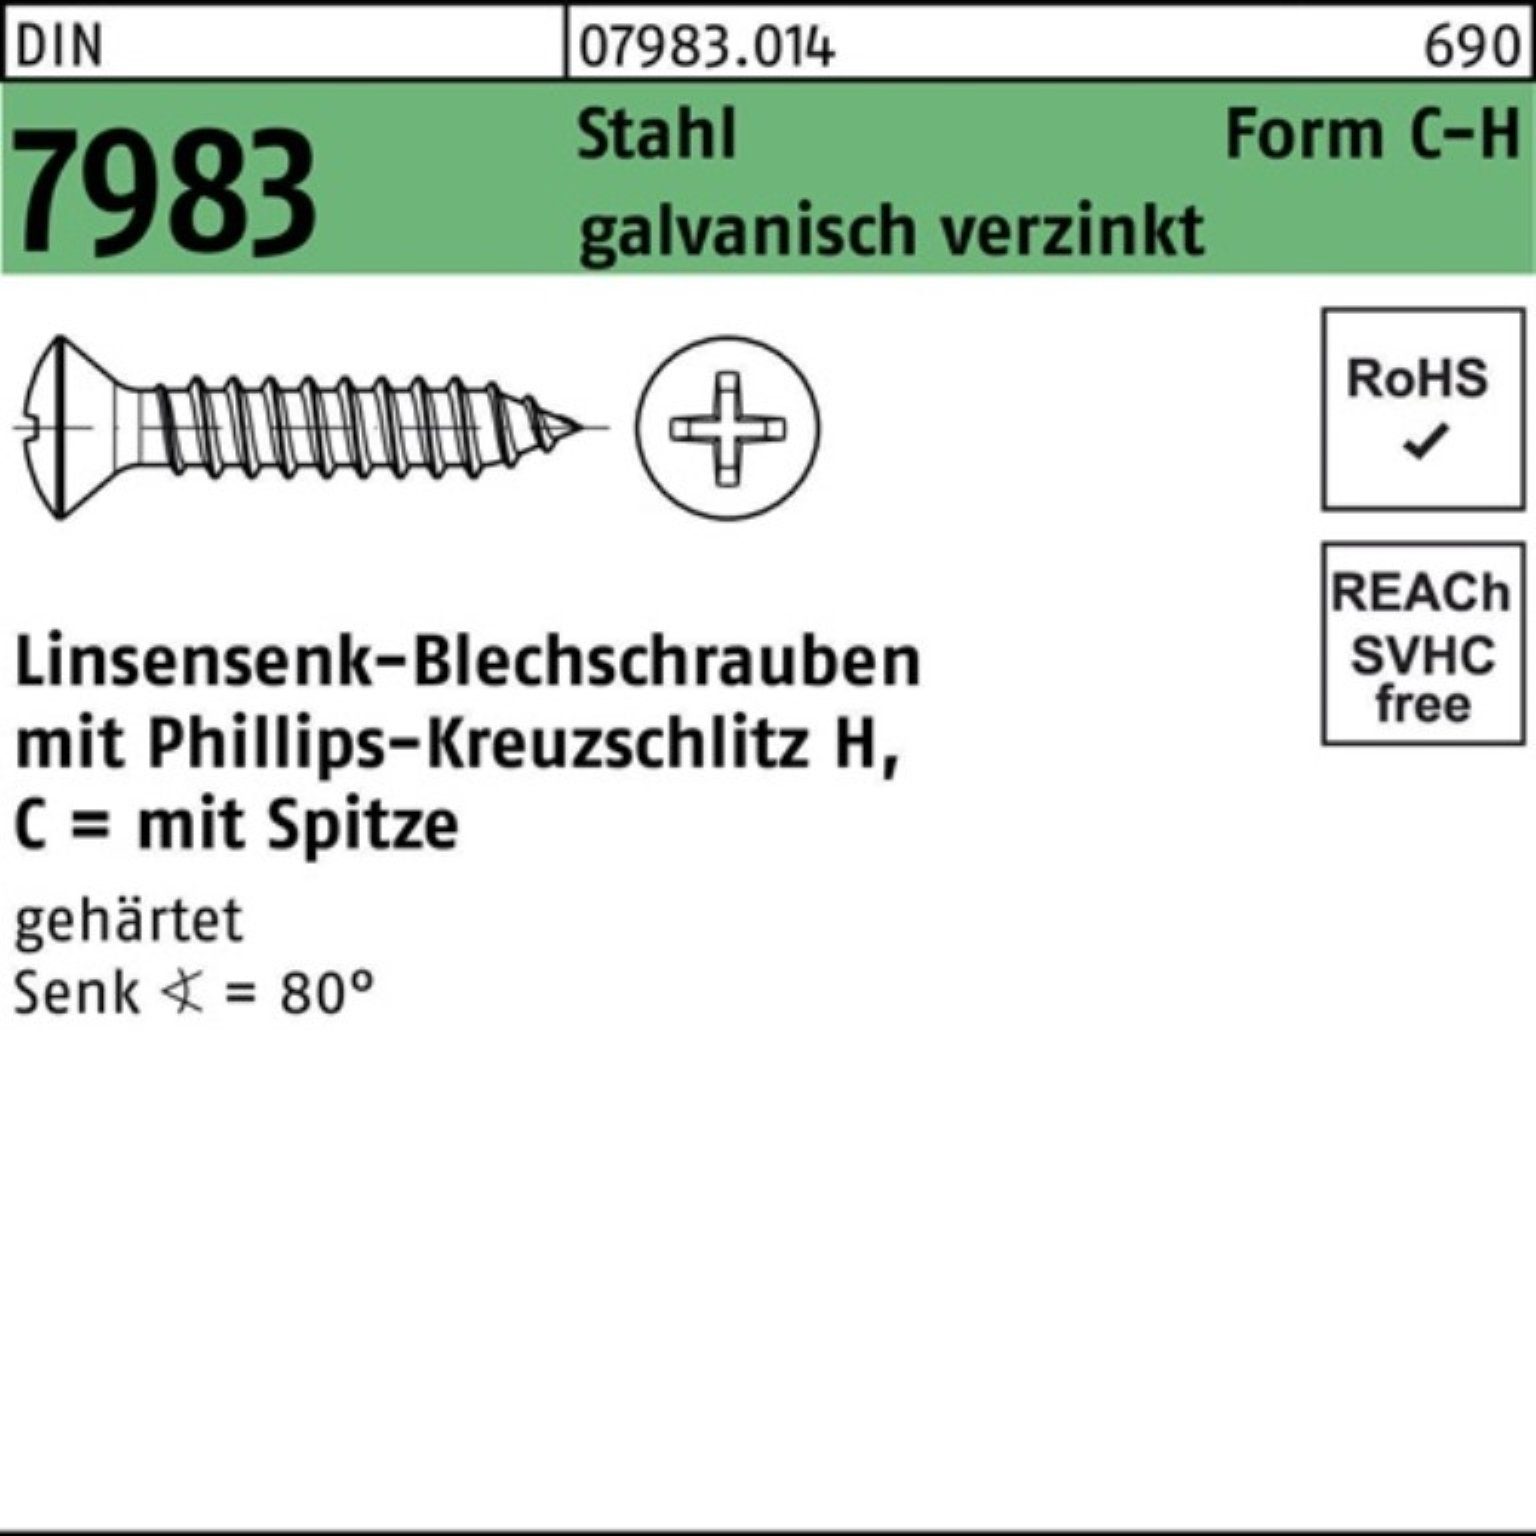 PH 5,5x16-H C Reyher 100er Schraube 7983 gehär DIN Pack Linsensenkblechschraube Stahl